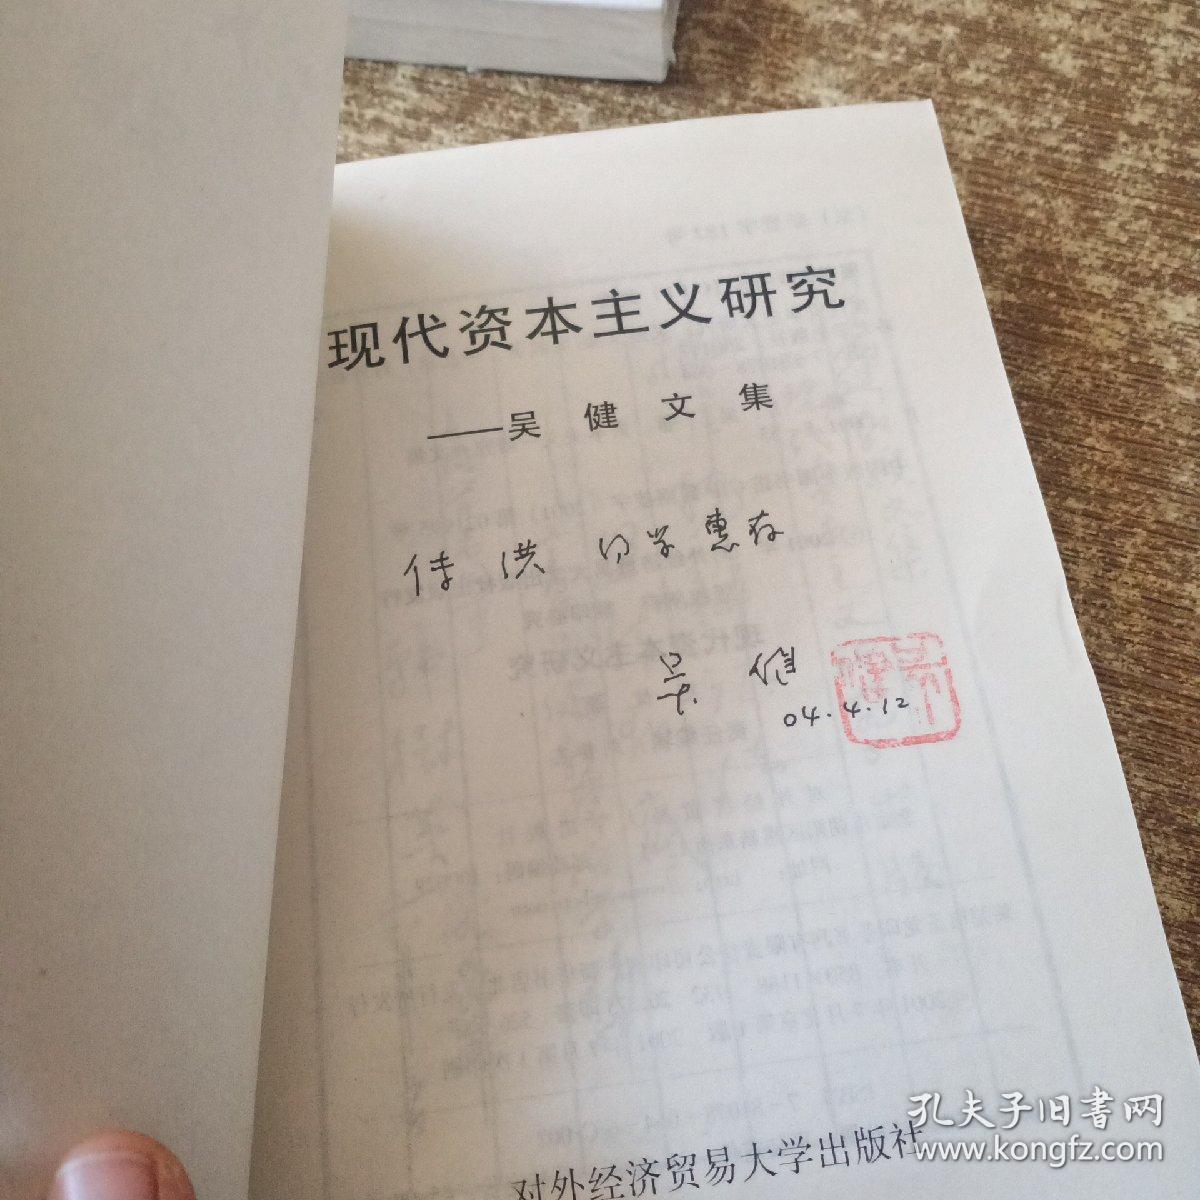 现代资本主义研究:吴健文集  有作者签名    实物拍图 现货